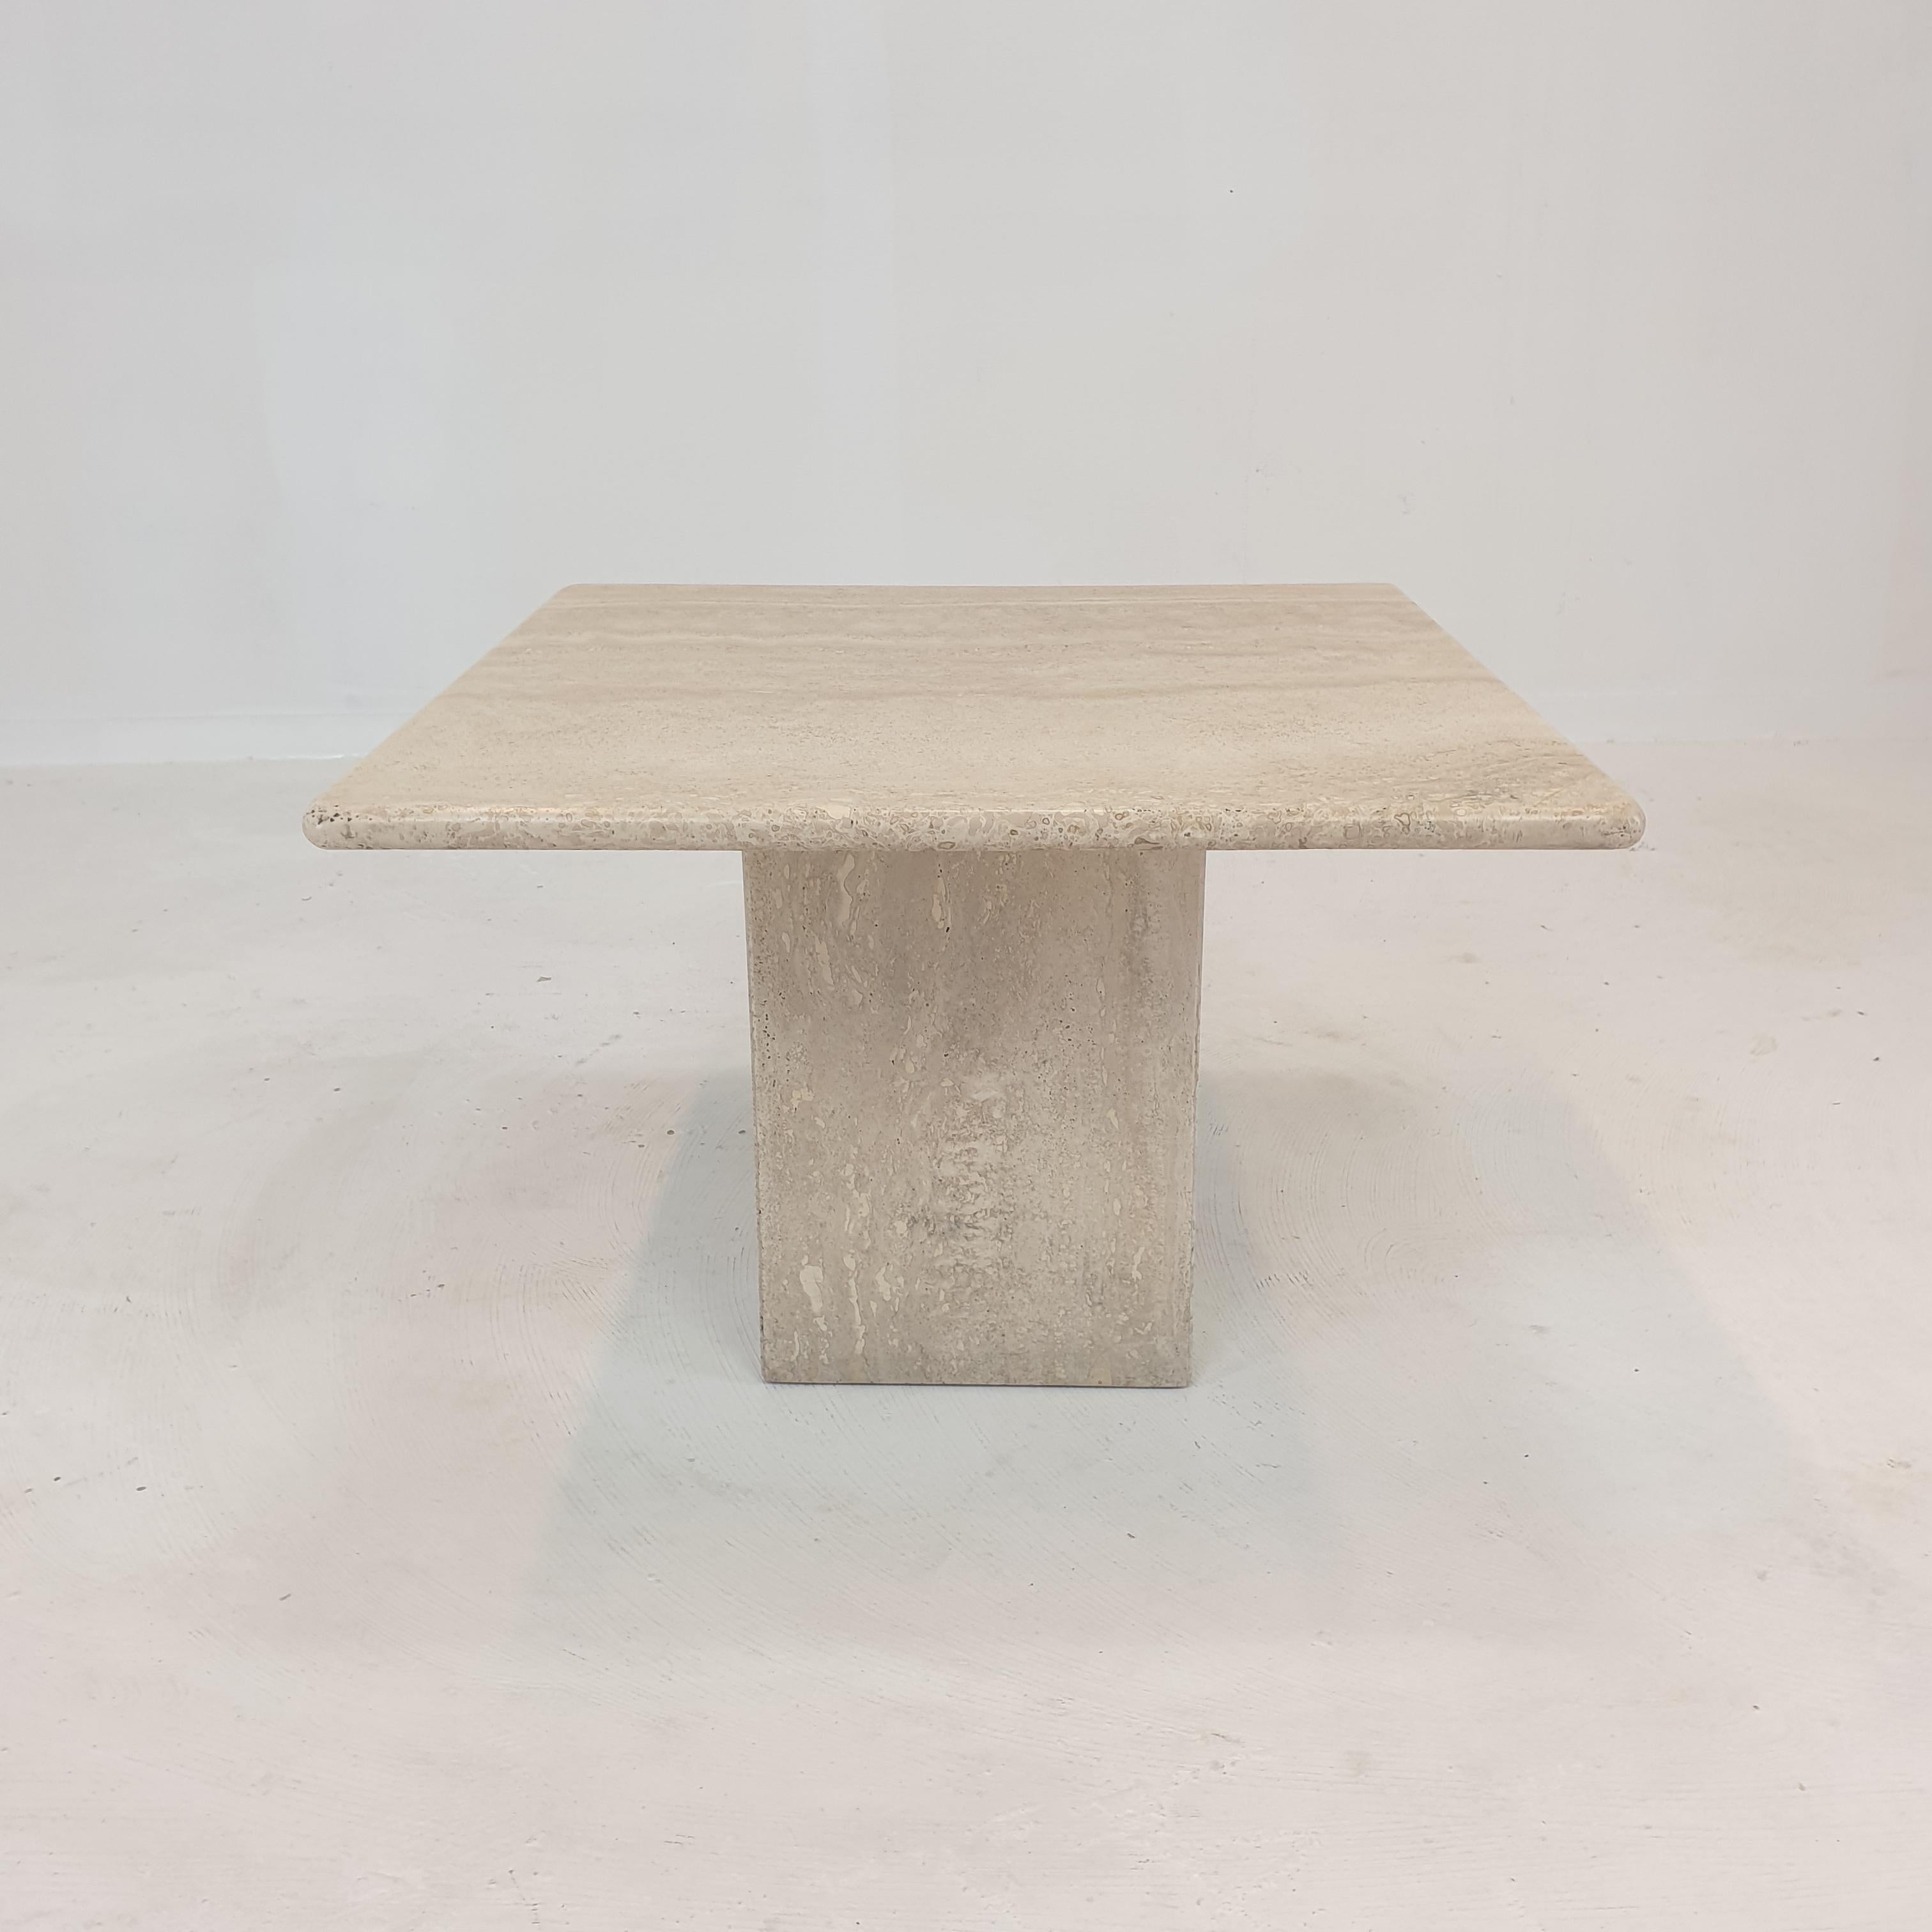 Très belle table basse italienne fabriquée à la main en travertin, années 1980.

Le beau plateau est arrondi sur le bord. 
Il est fait d'un magnifique travertin.

Il présente les traces normales d'utilisation, voir les photos.

Nous